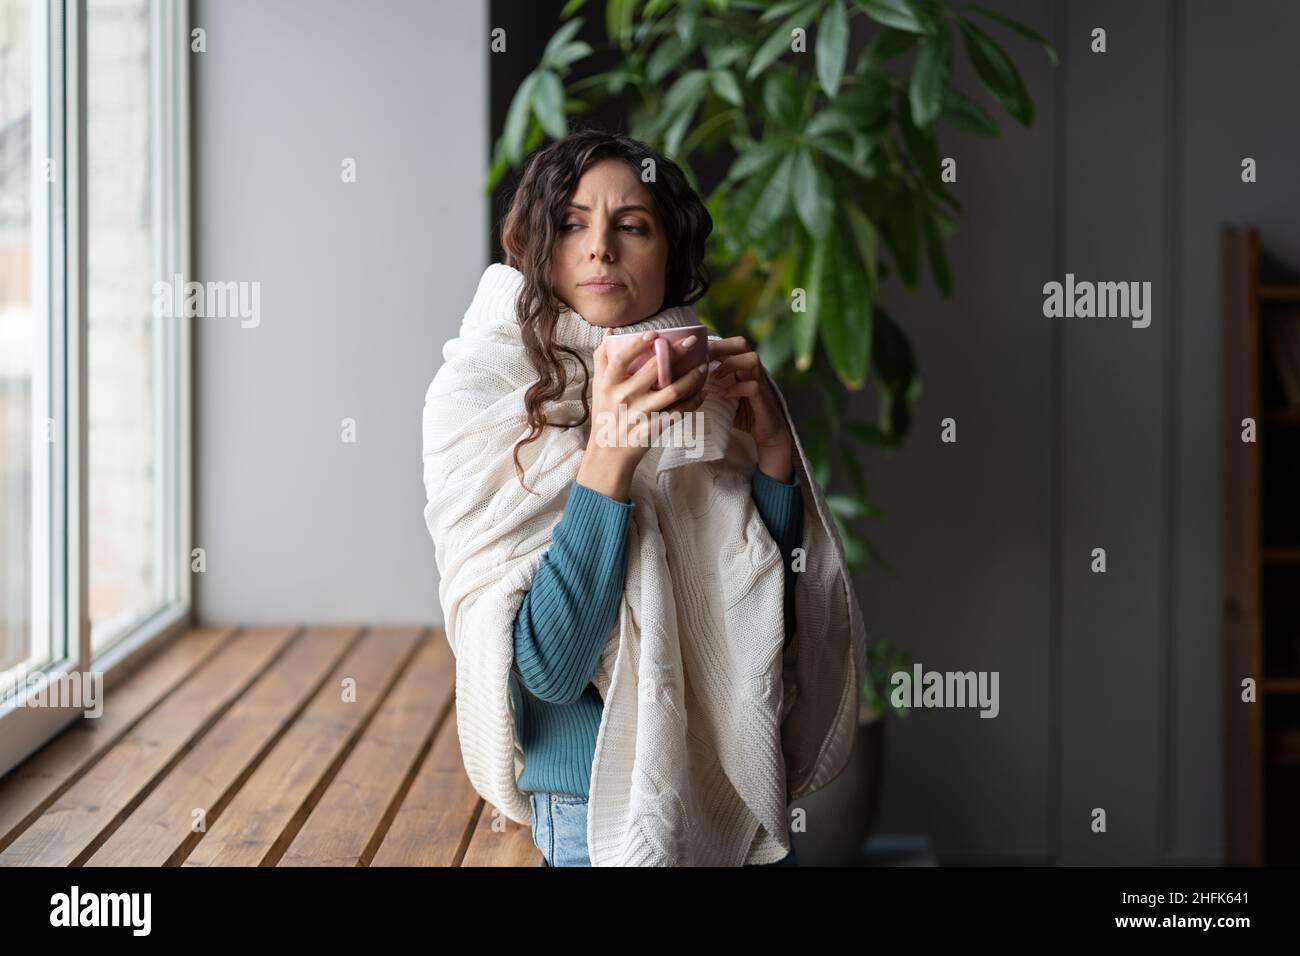 Mal de gorge.Femme malade qui boit du thé, souffrant d'une infection respiratoire causée par le virus de la grippe Banque D'Images